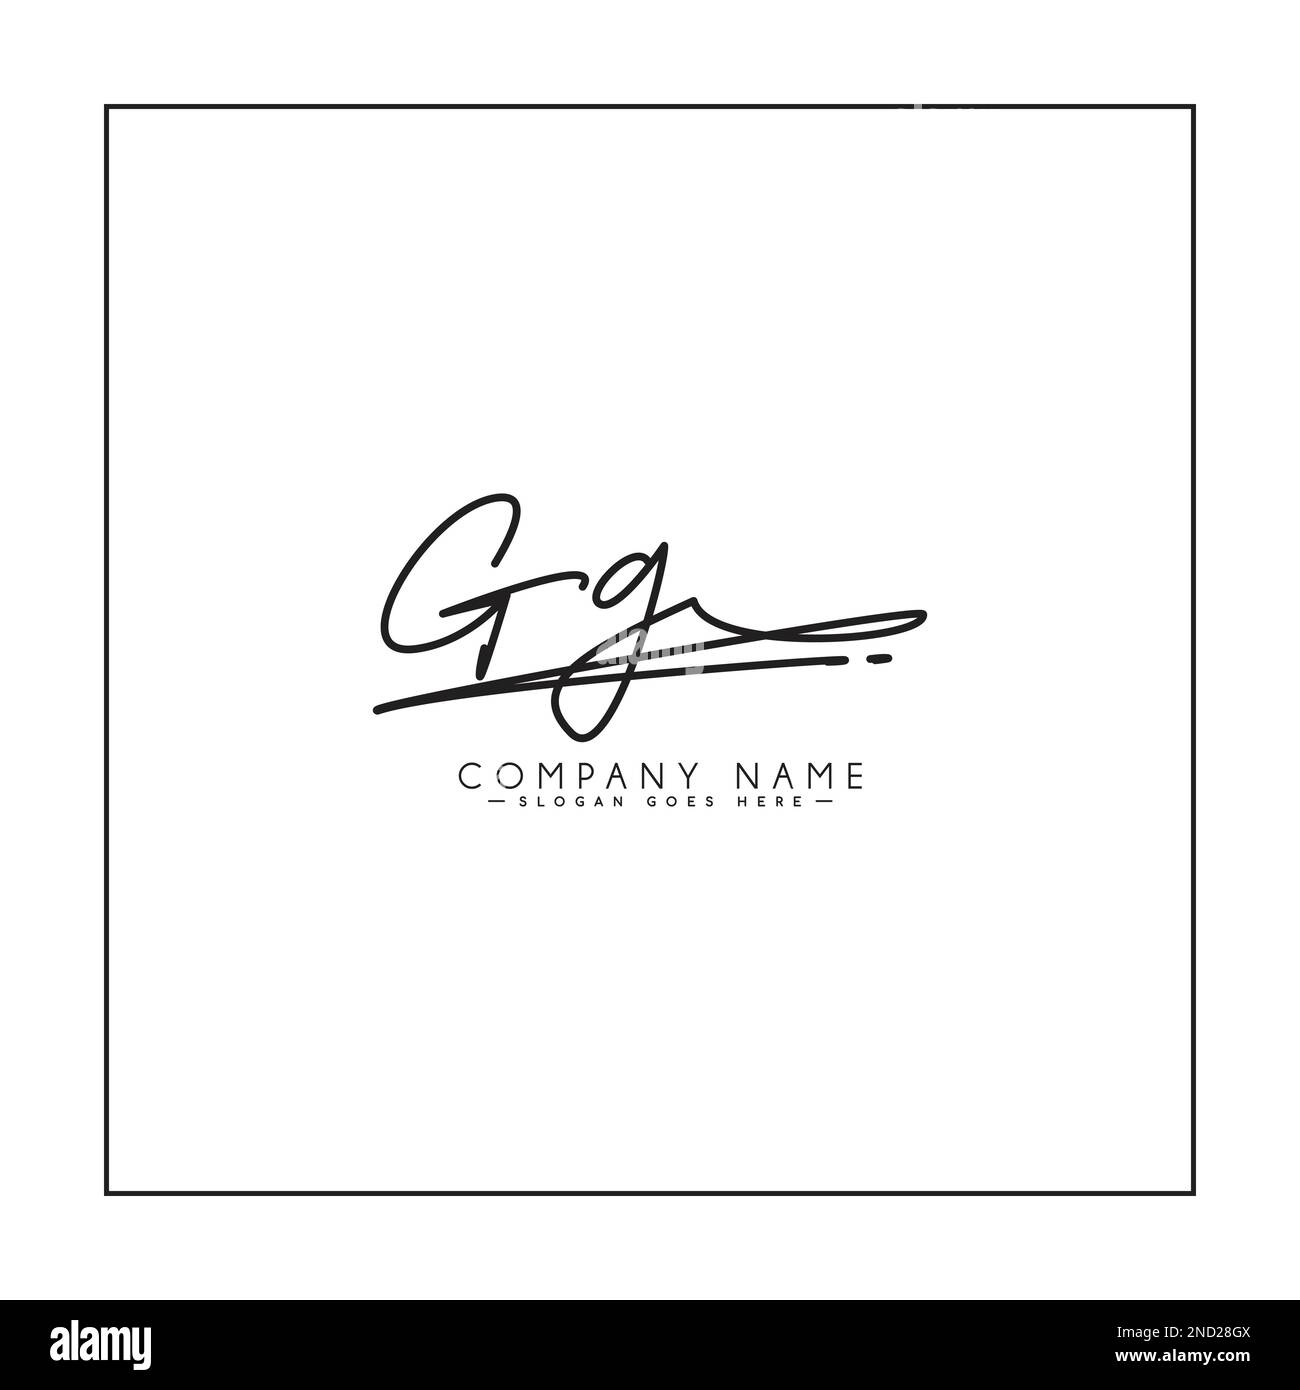 GG logo initial dans le style Signature pour la photographie et la mode d'affaires - dessin main logo Signature Vector Illustration de Vecteur